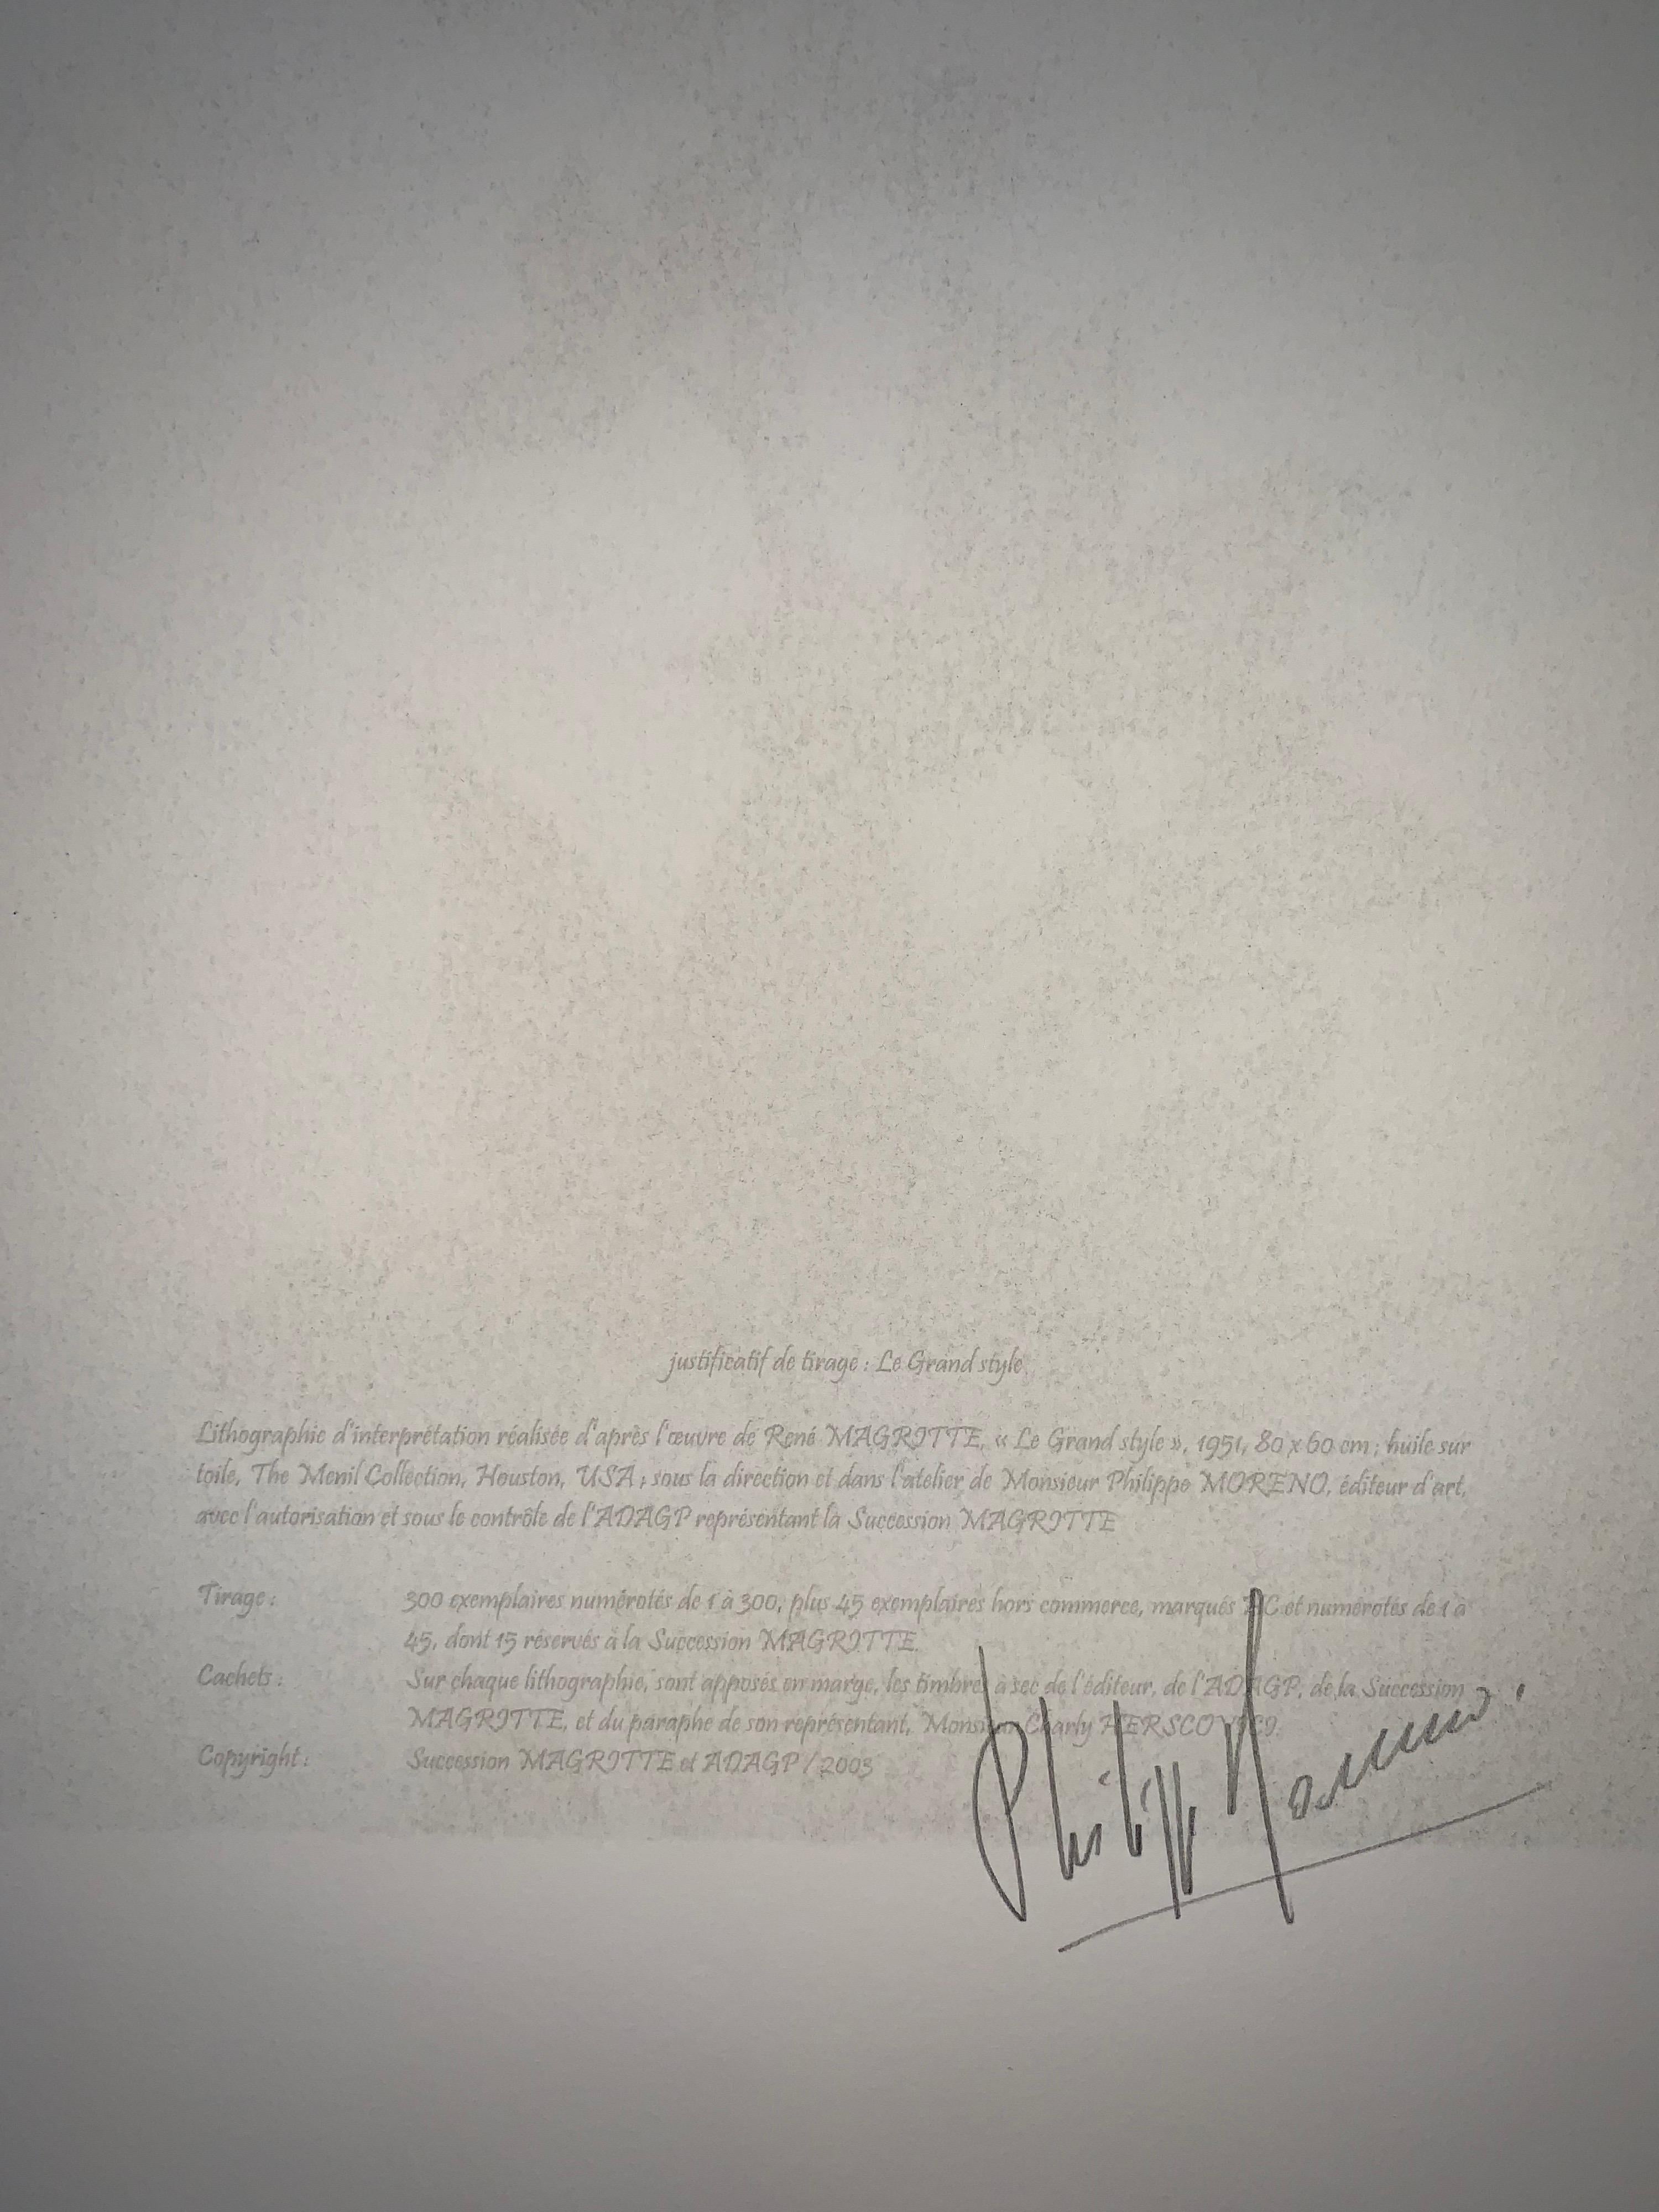 Lithographie en couleur d'après l'huile sur toile de 1951 de René Magritte, signature imprimée de Magritte et numérotée de l'édition de 300. 
La lithographie porte les cachets secs de la Fondation Magritte et de l'ADAGP et est contresignée au crayon